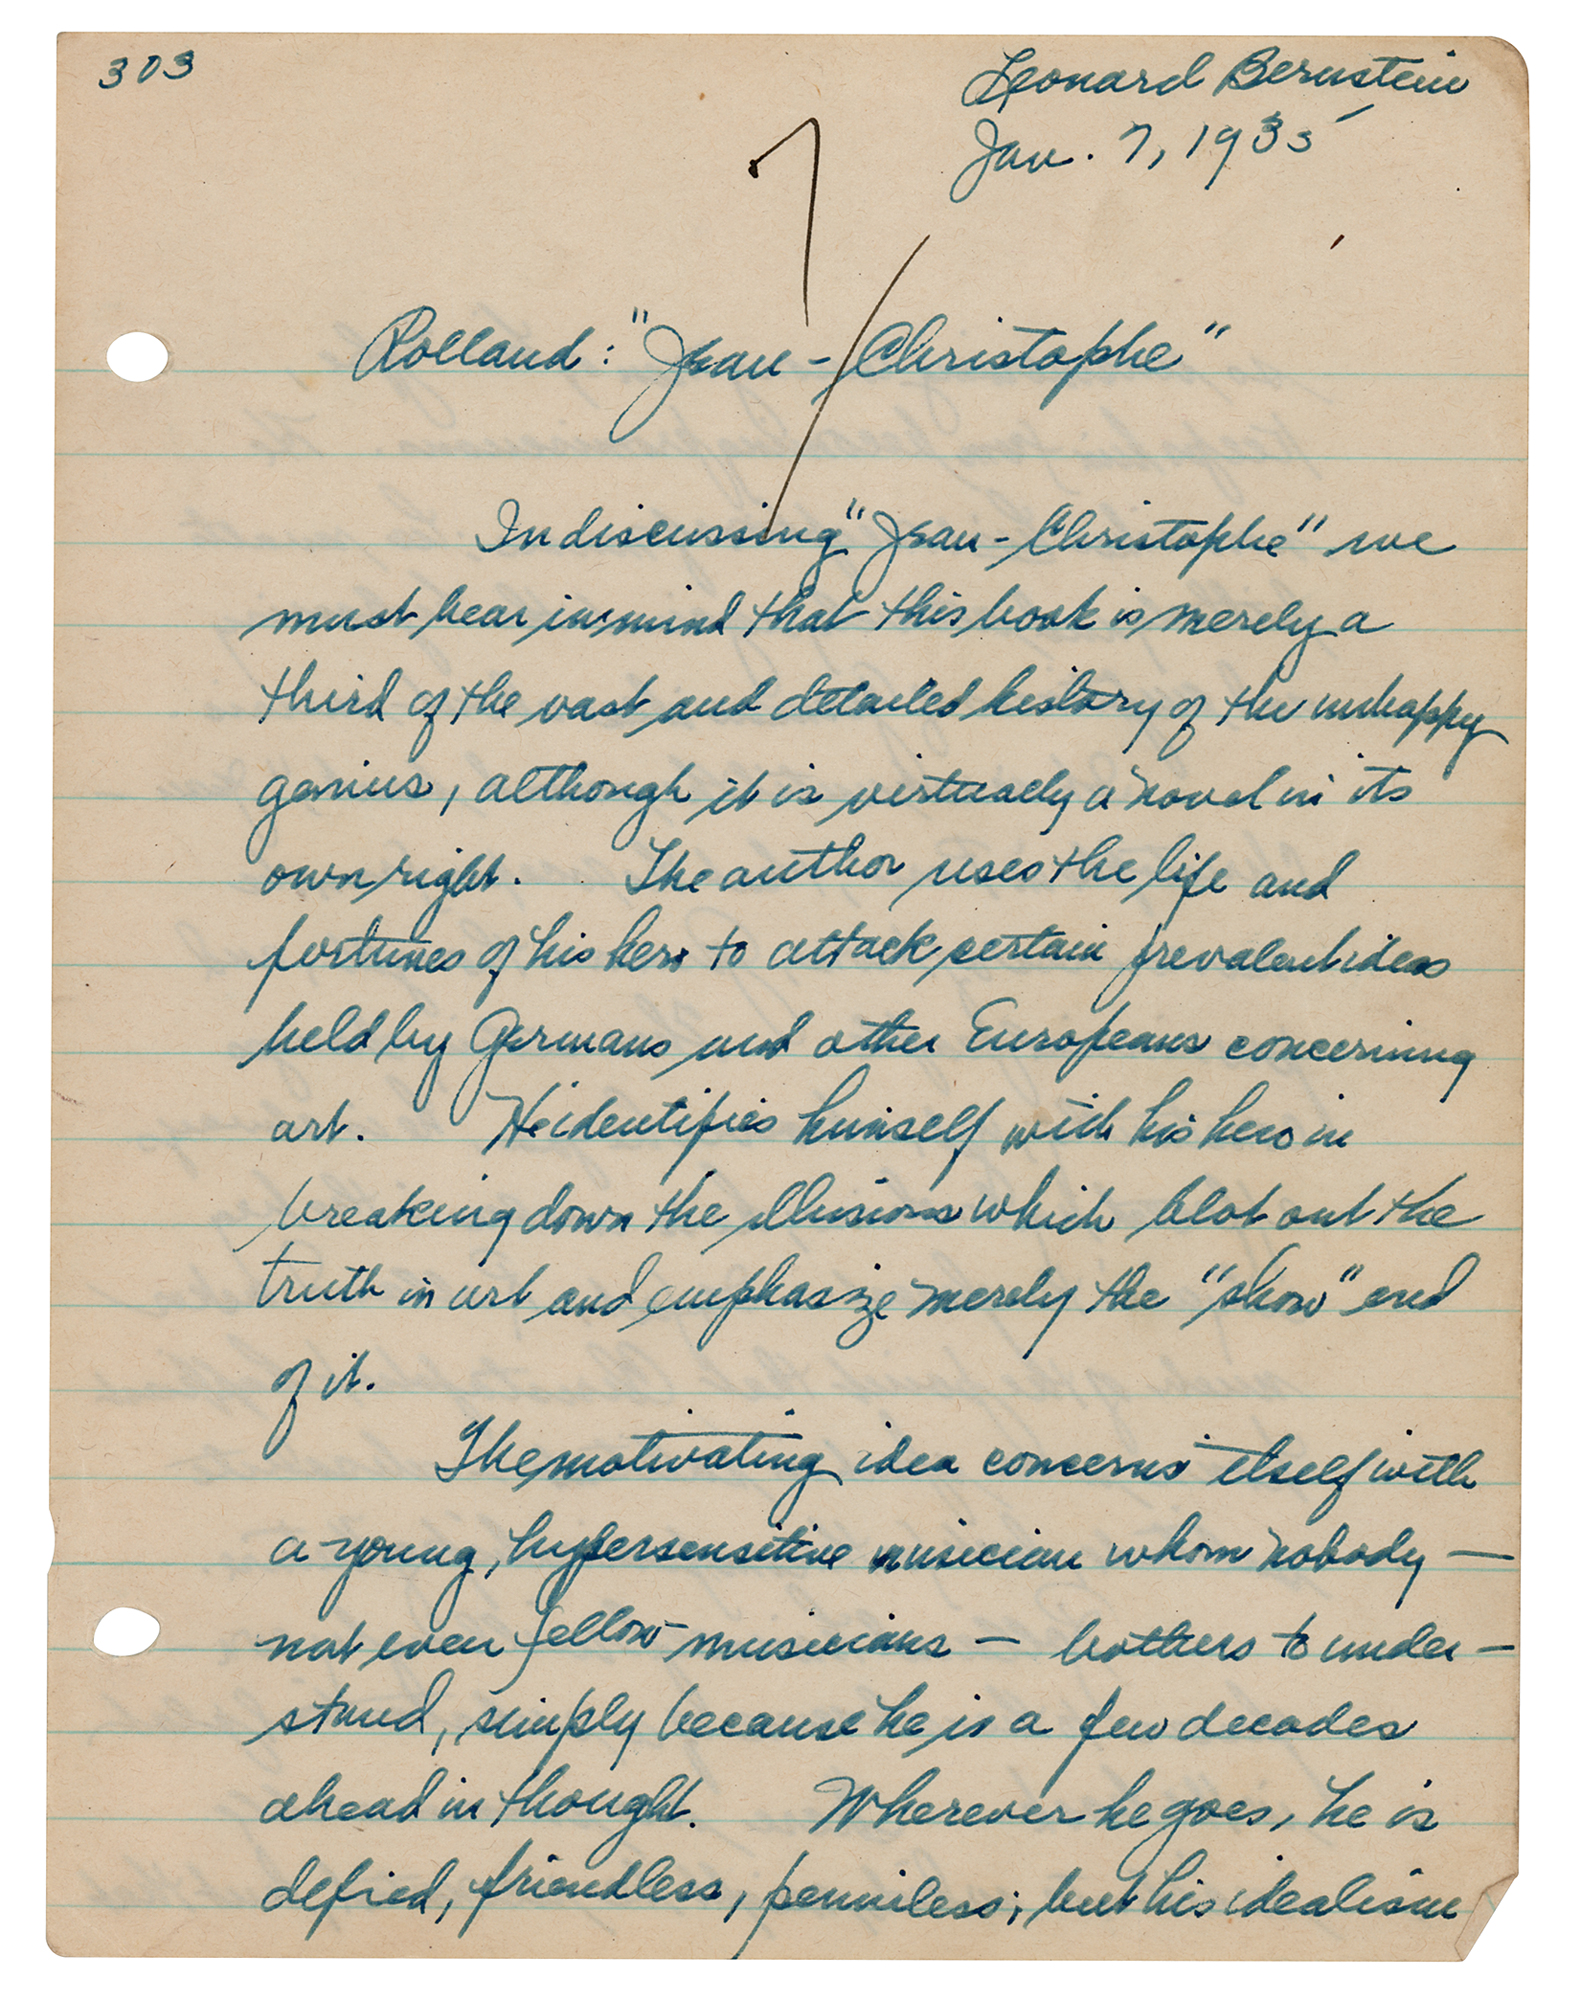 Lot #520 Leonard Bernstein Autograph Manuscript Signed